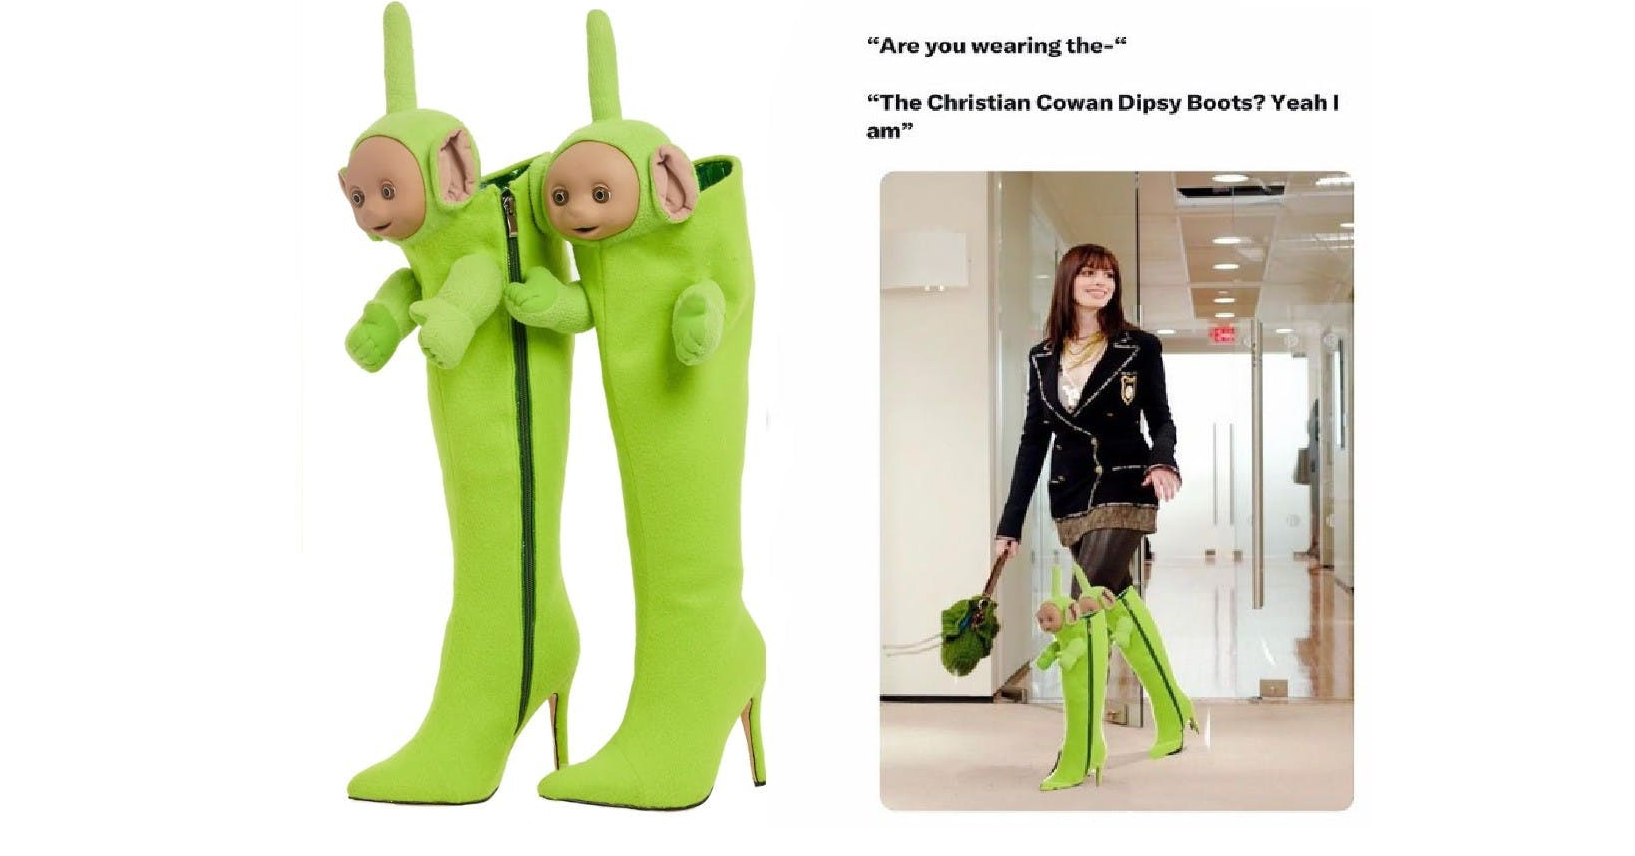 照片中提到了"Are you wearing the-"、"The Christian Cowan Dipsy Boots? Yeah I、am”，包含了天線寶寶靴、天線寶寶、開機、天線寶寶、天線寶寶 8 會說話的 Dipsy 毛絨毛絨玩具